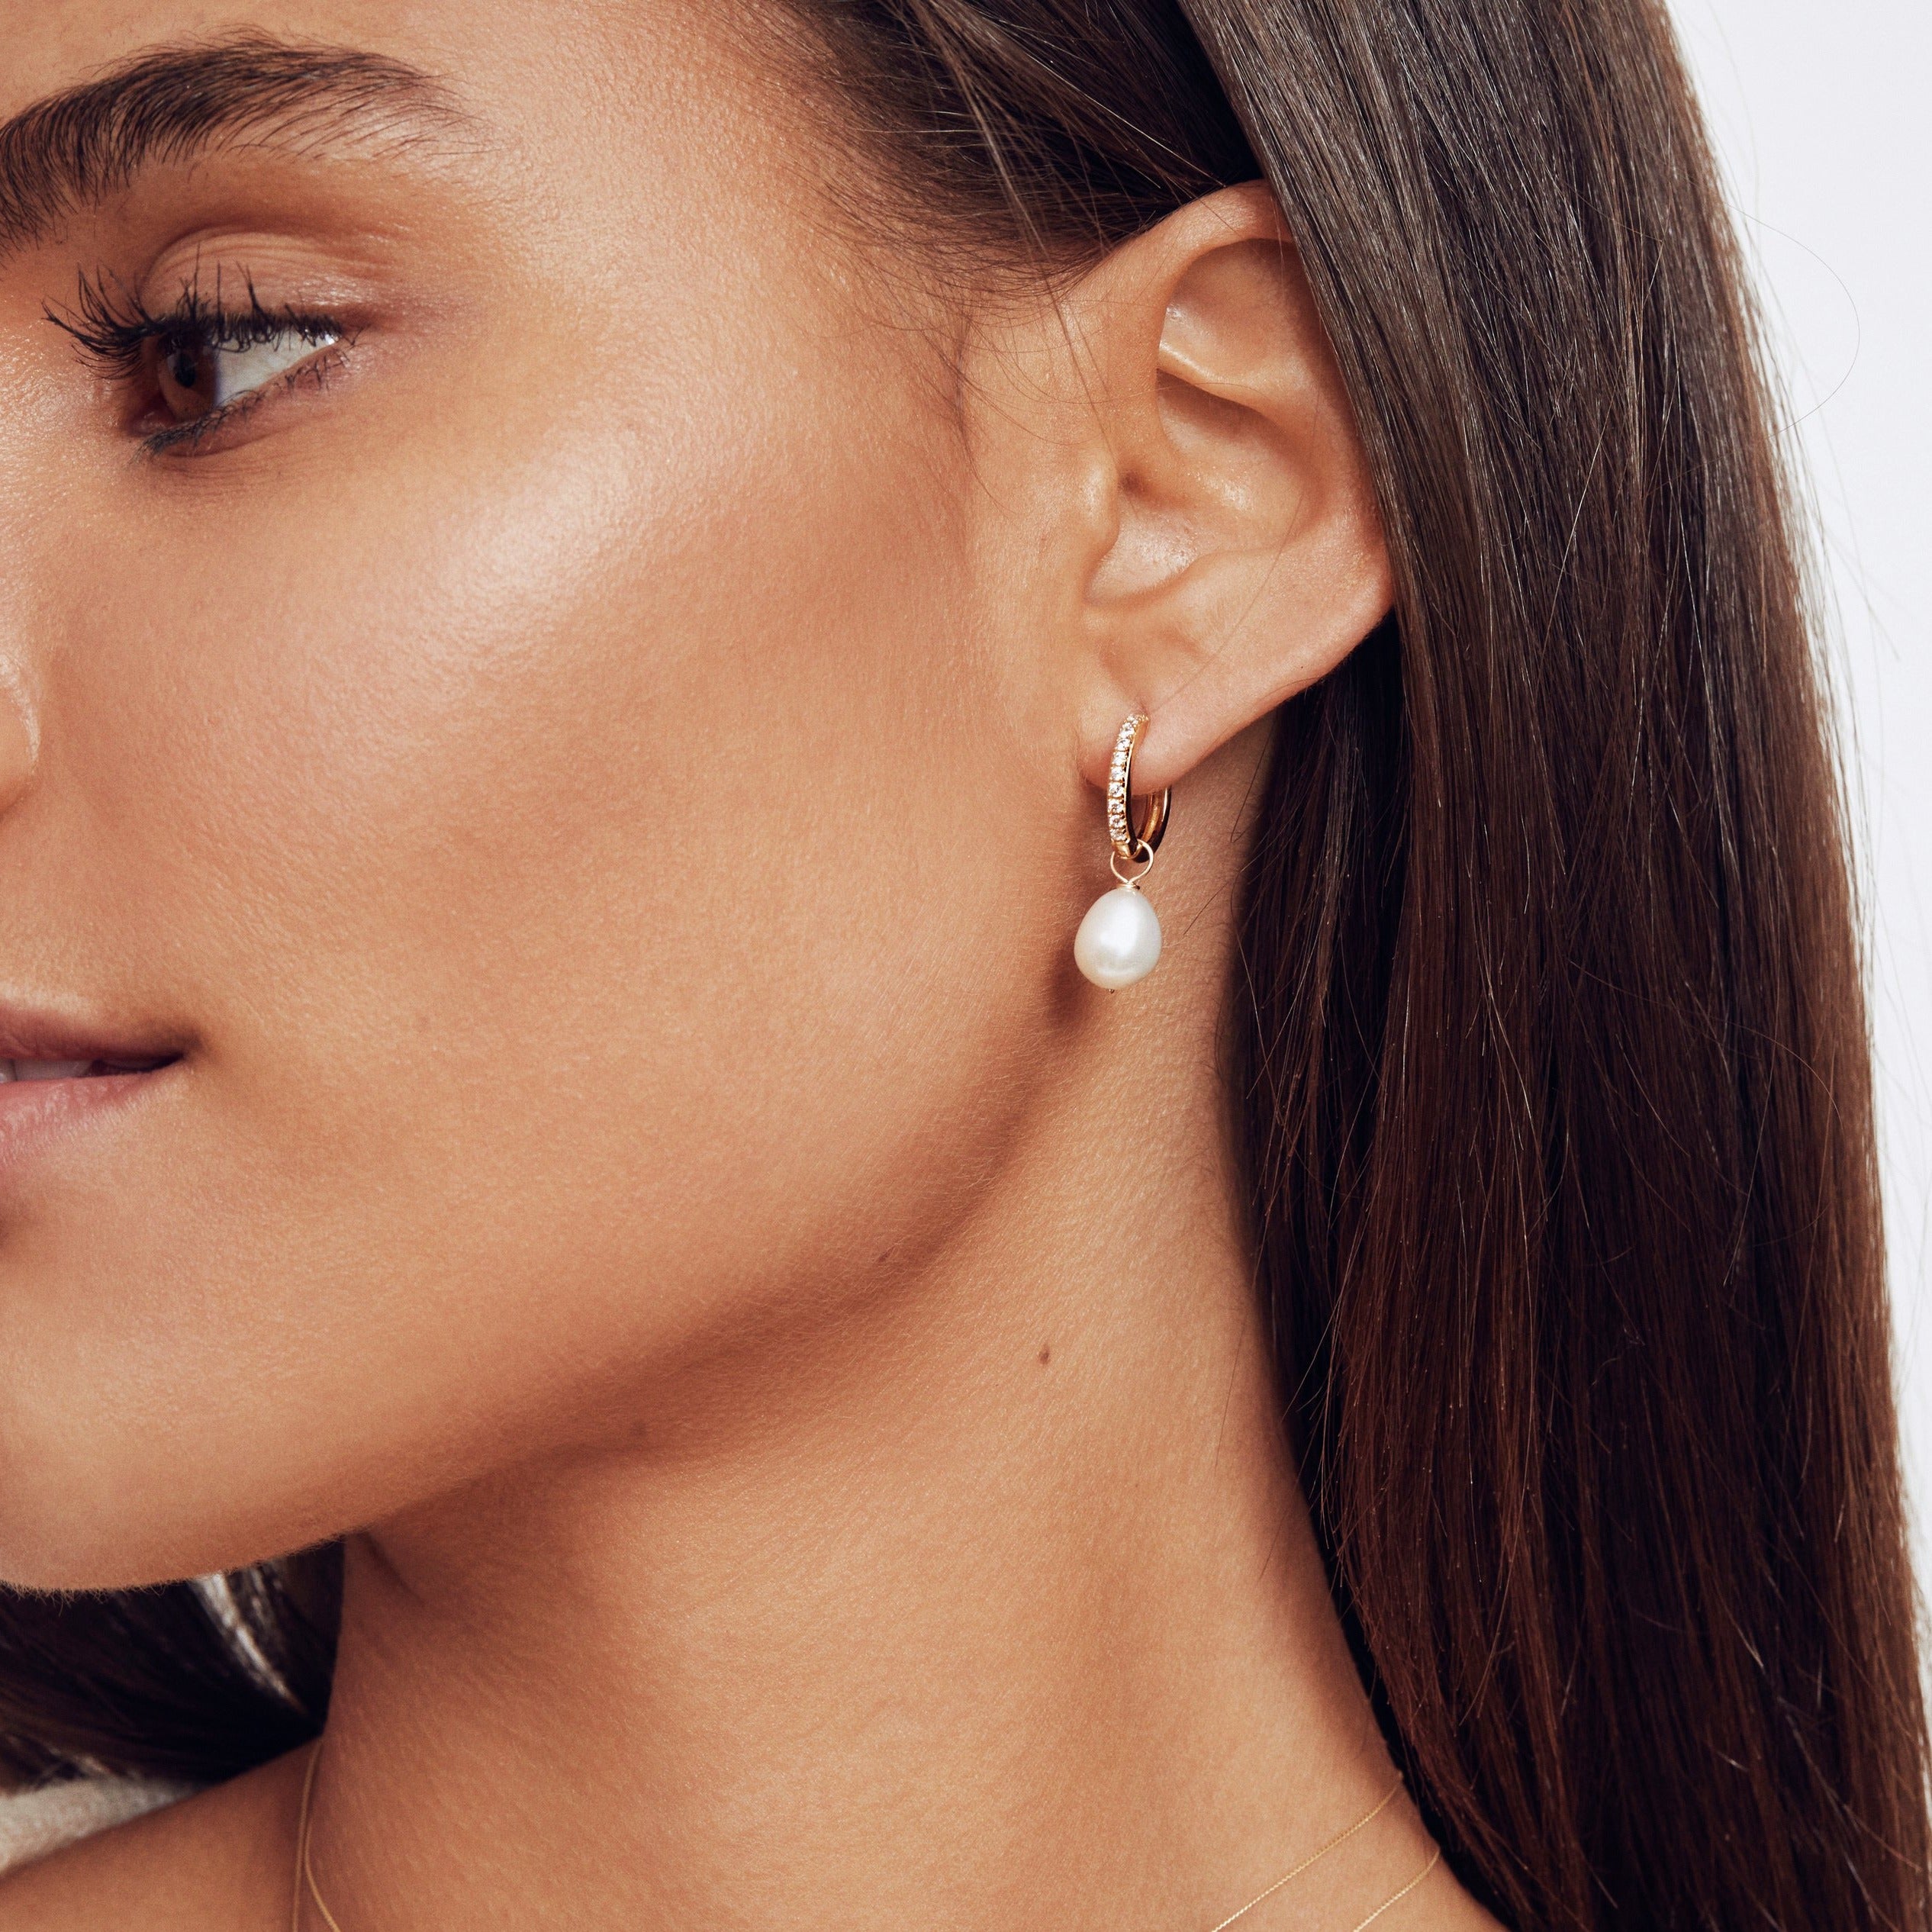 A silver diamond style large pearl drop hoop earring in the ear lobe of a brunette woman